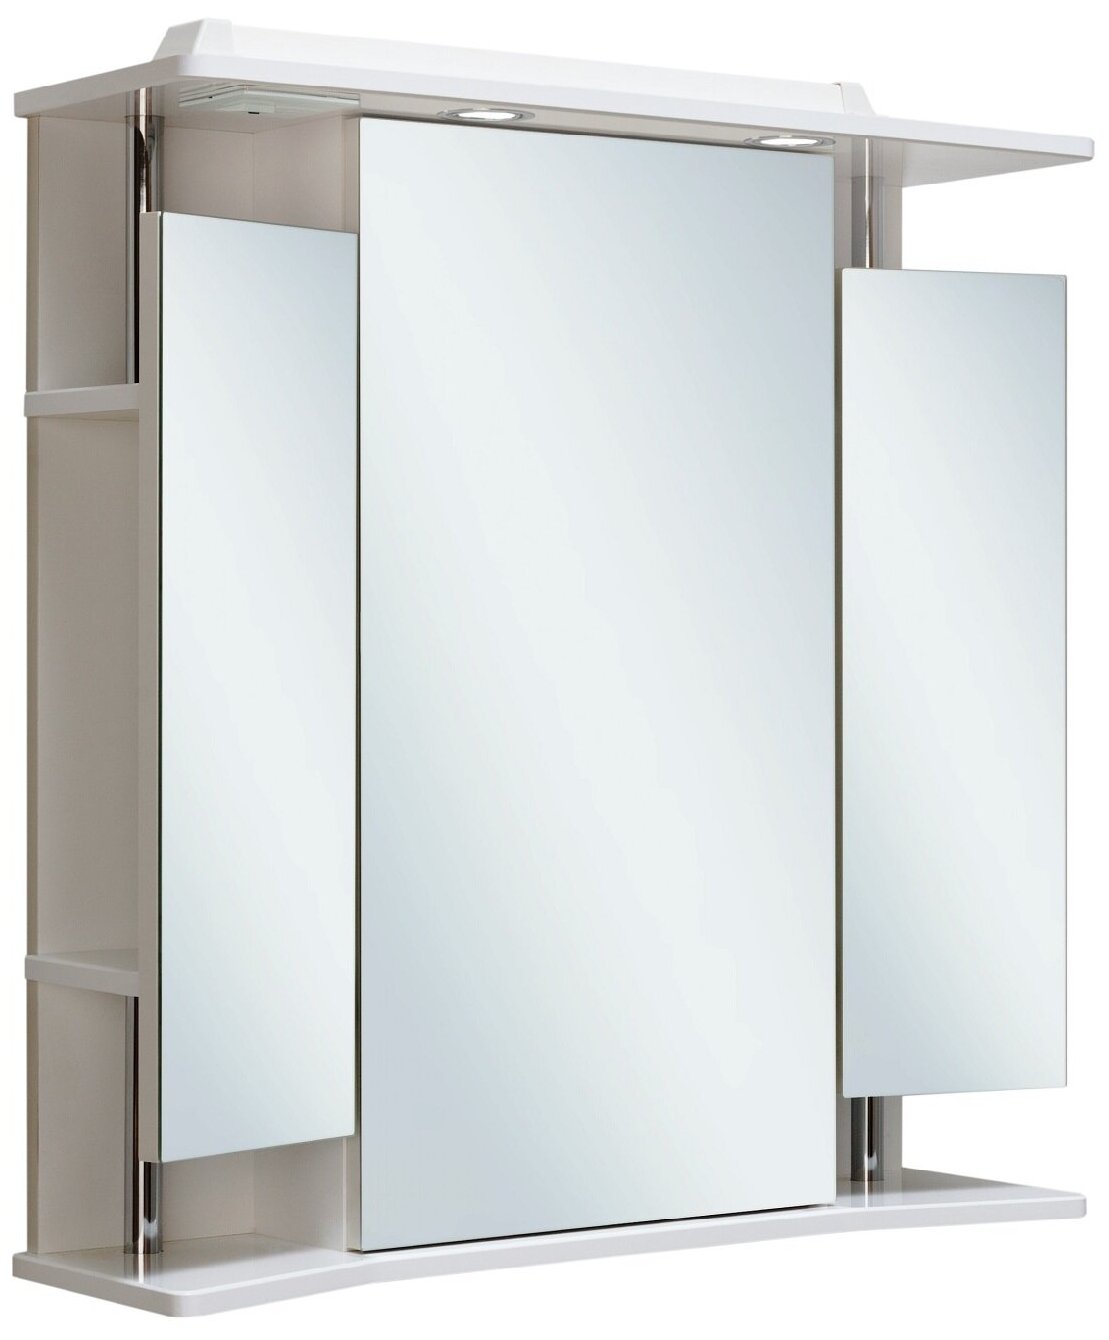 Зеркало шкаф для ванной / с подсветкой / Runo / Валенсия 75 / полка для ванной